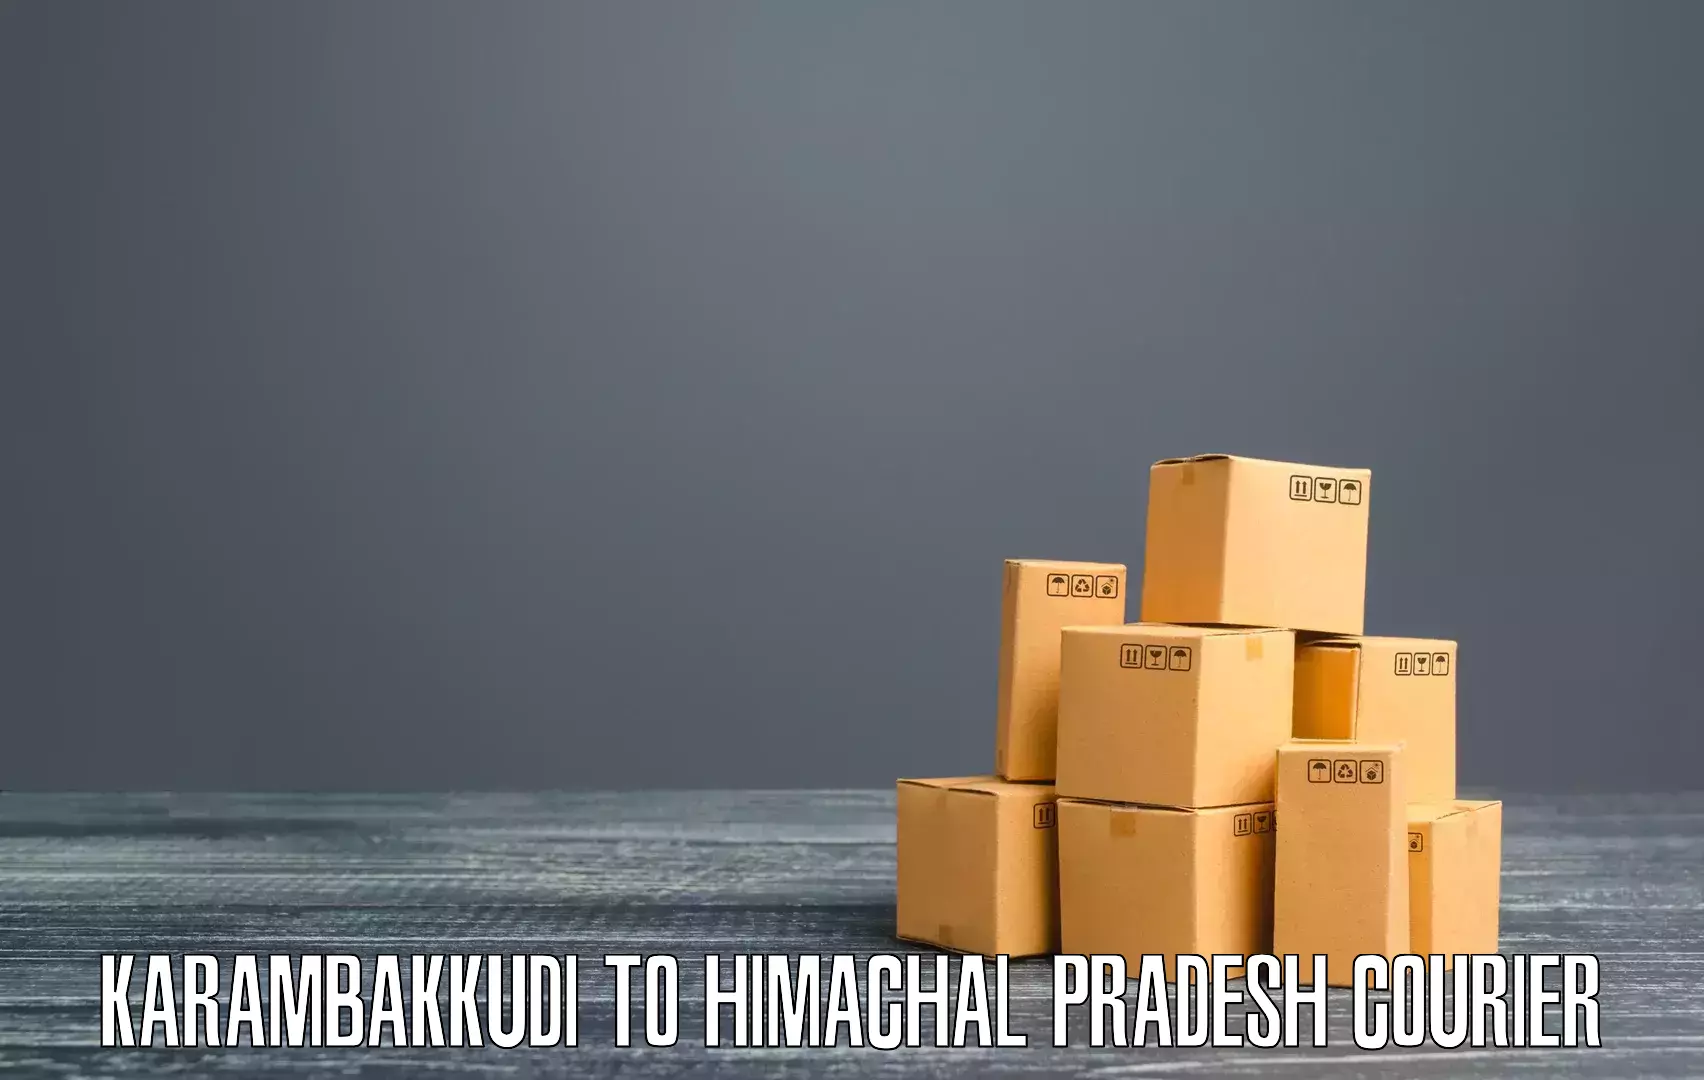 Professional courier handling Karambakkudi to Himachal Pradesh